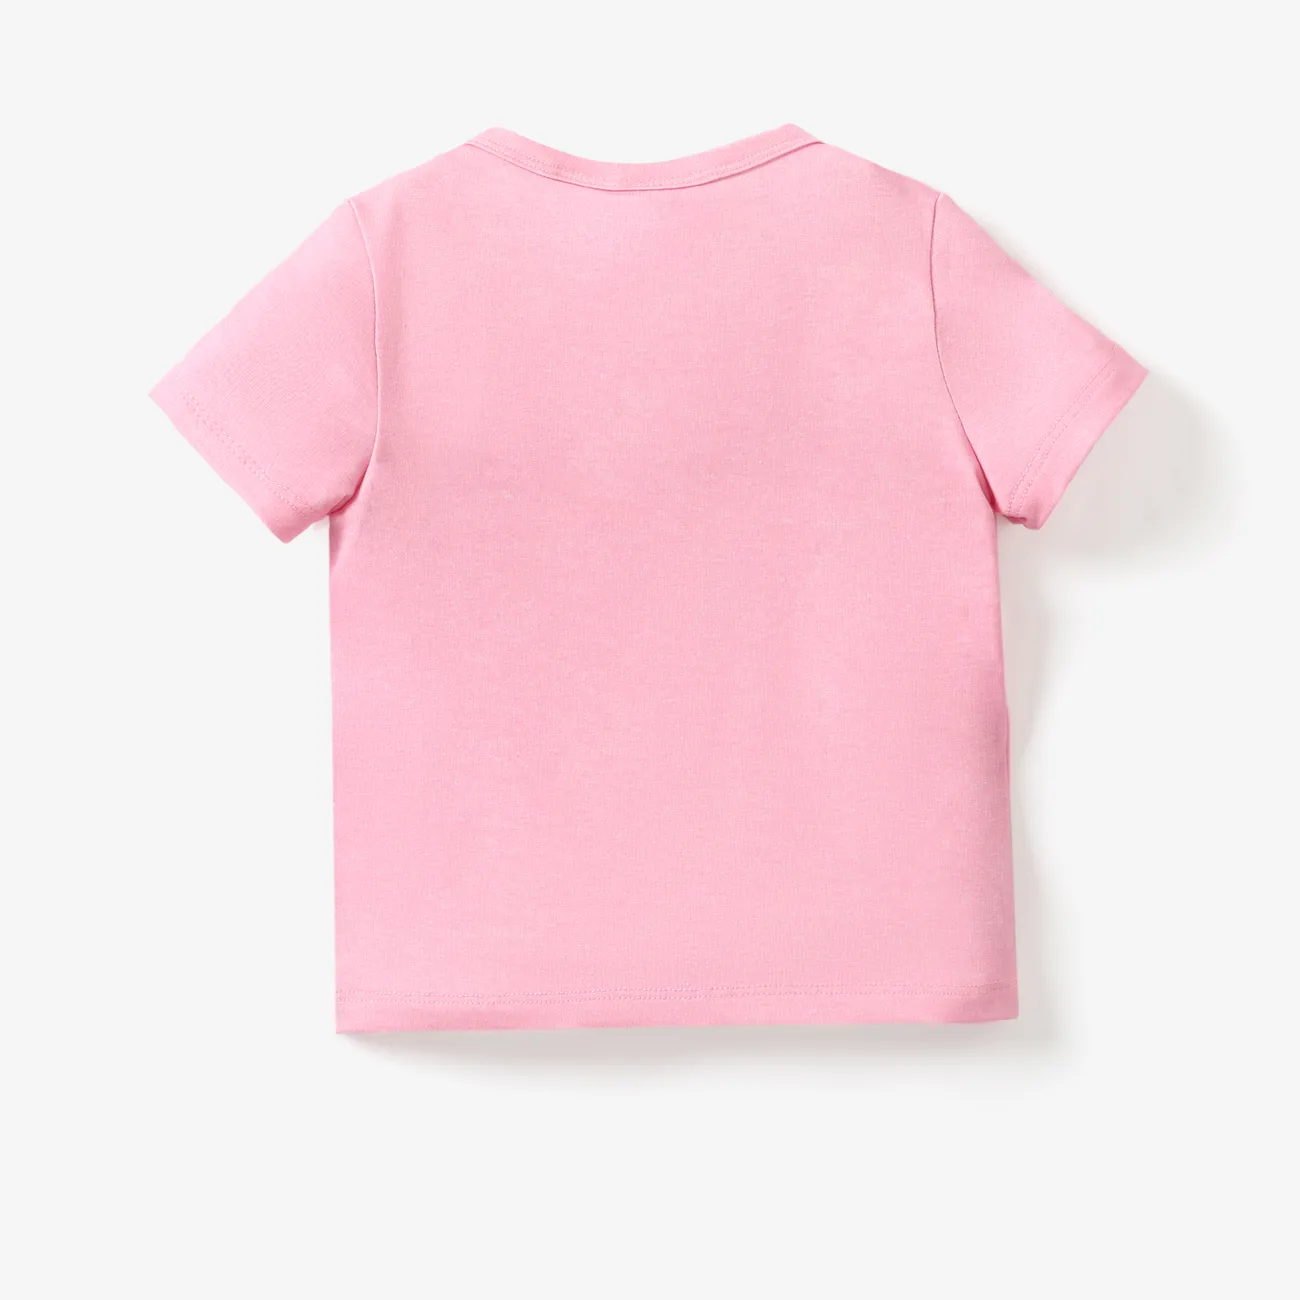 Disney Mickey and Friends Toddler Girl Naia™ Character Print T-shirt
 Pink big image 1